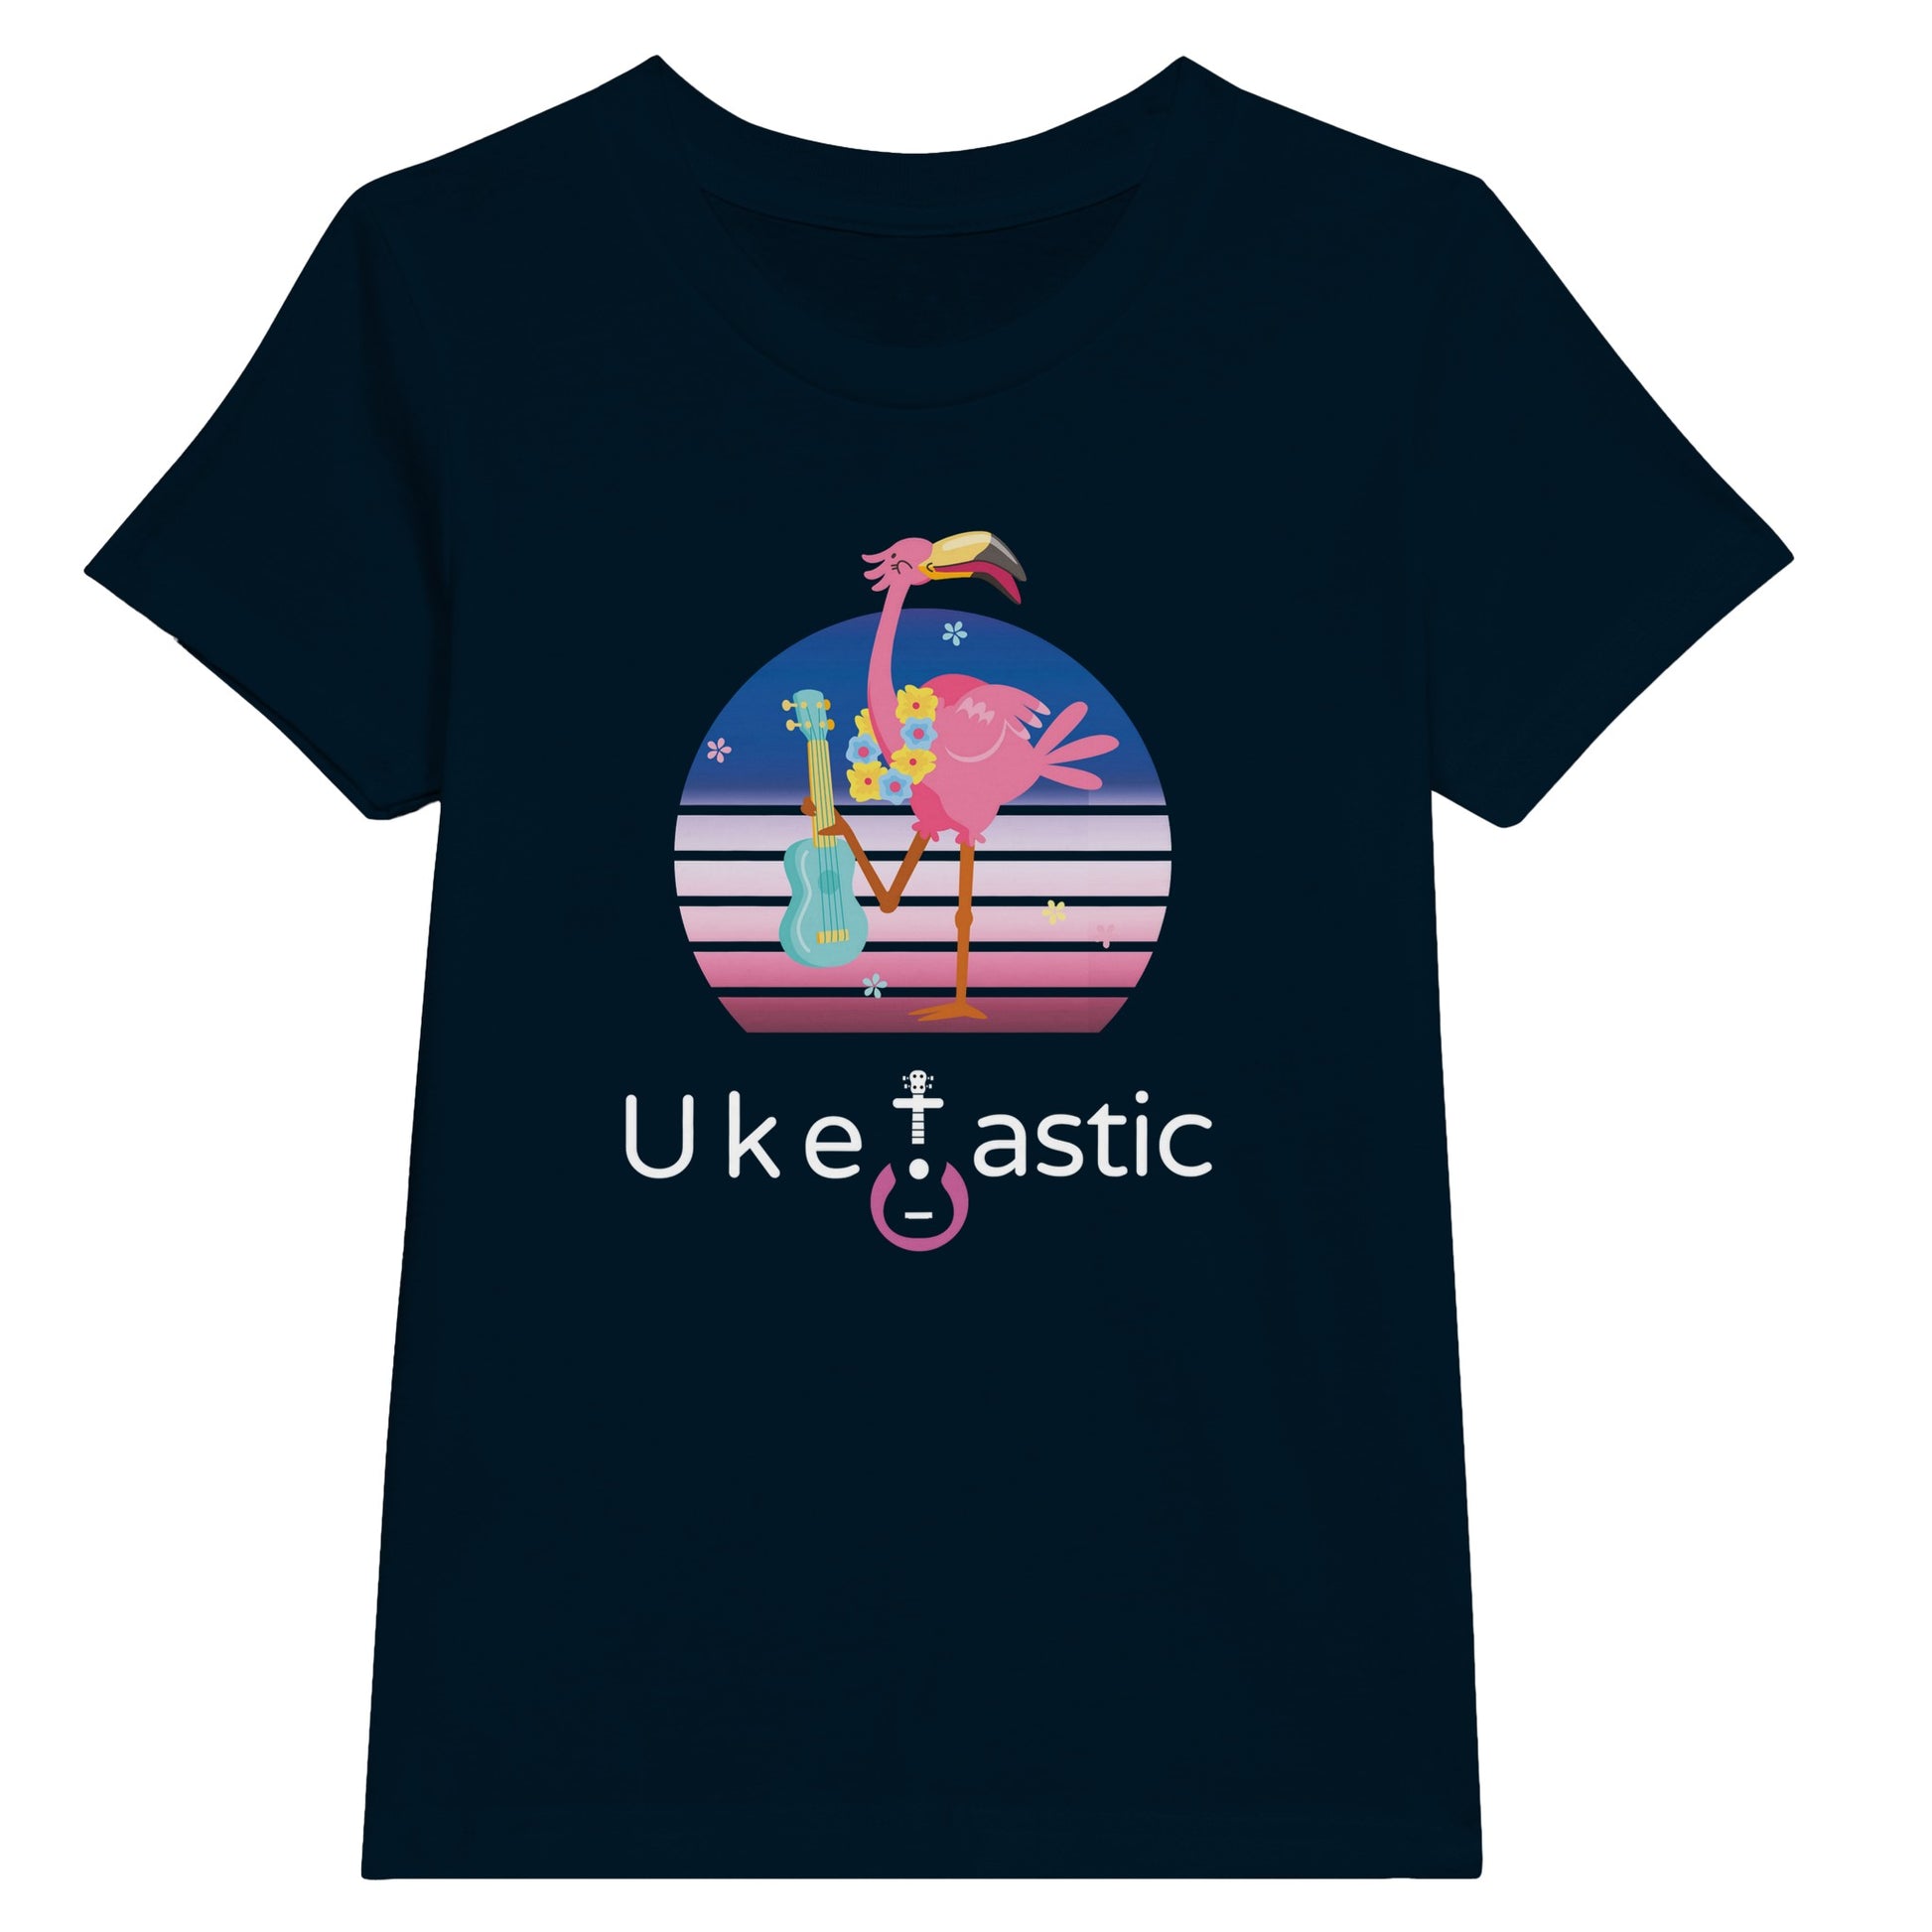 Kids ukulele t-shirt flamingo design navy2